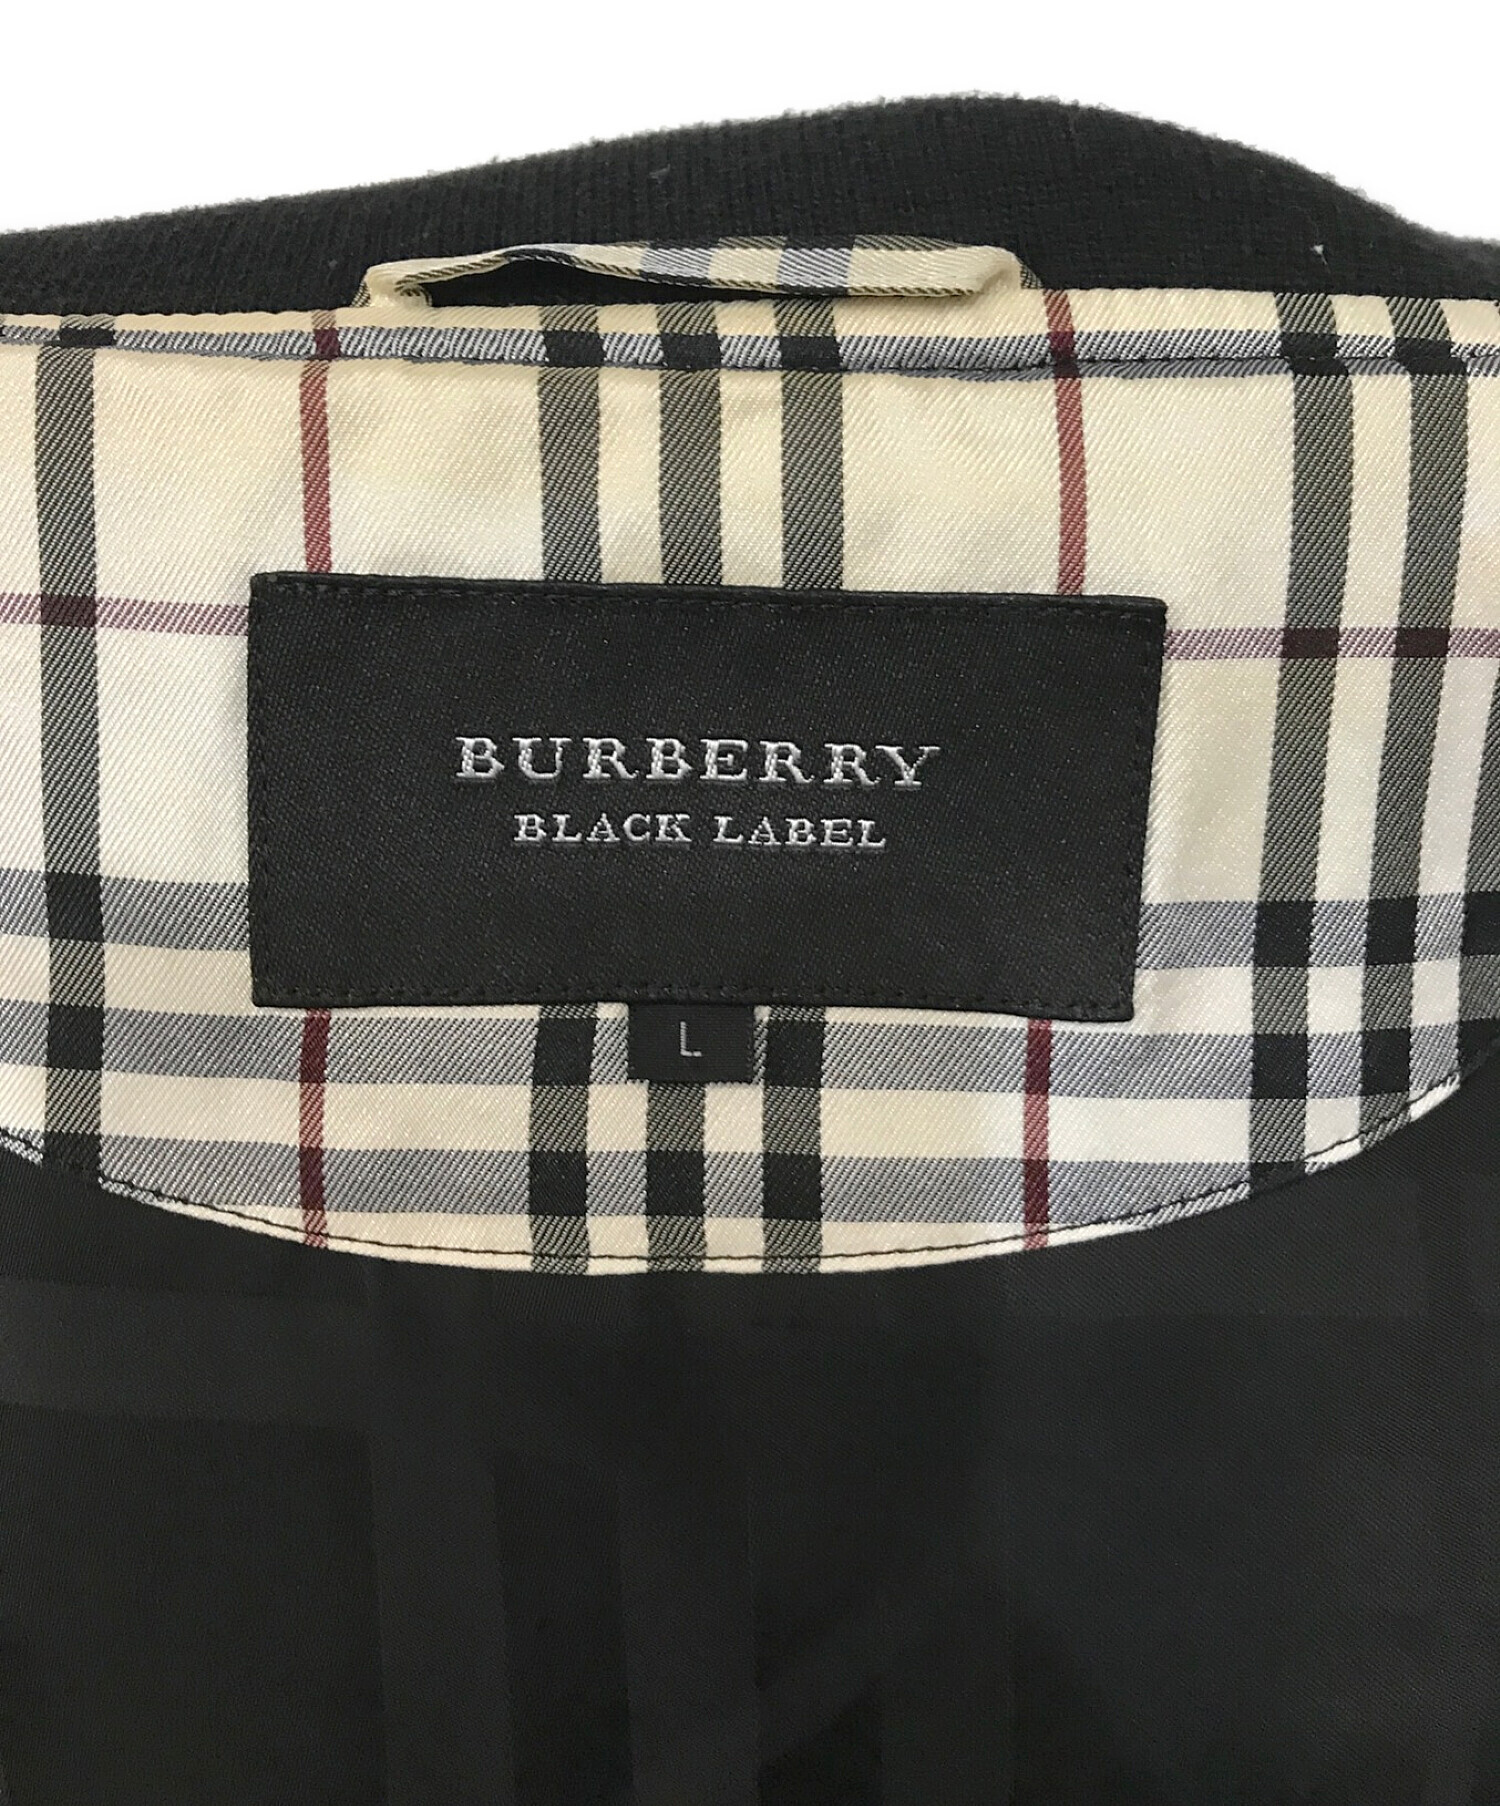 BURBERRY BLACK LABEL (バーバリーブラックレーベル) ジップブルゾン ブラック サイズ:L